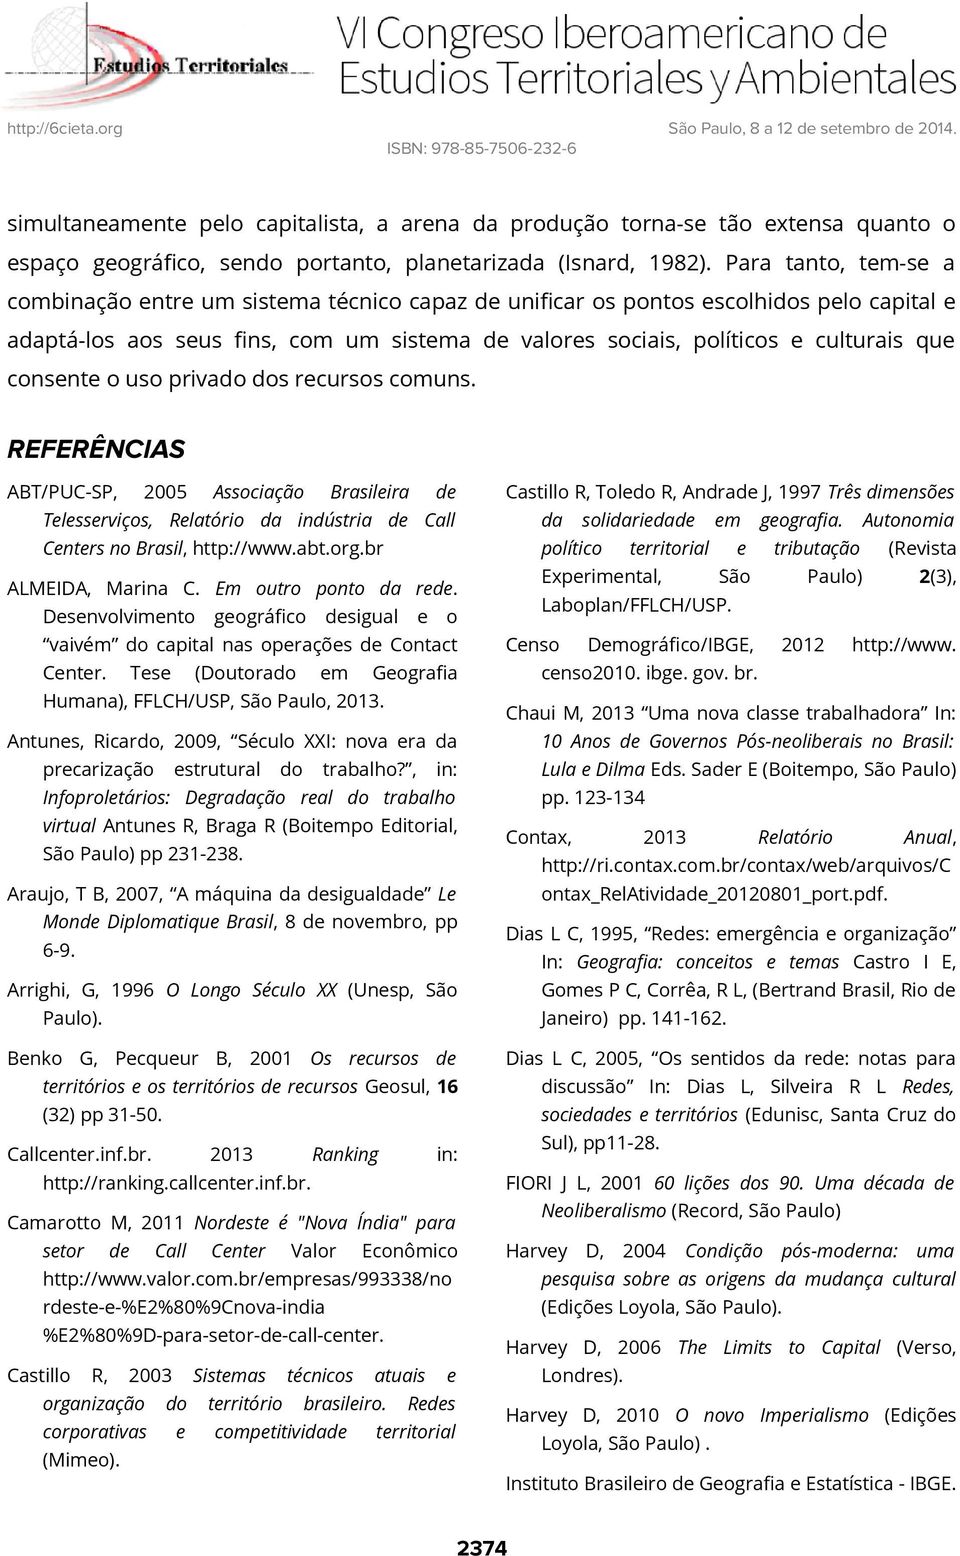 consente o uso privado dos recursos comuns. REFERÊNCIAS ABT/PUC-SP, 2005 Associação Brasileira de Telesserviços, Relatório da indústria de Call Centers no Brasil, http://www.abt.org.